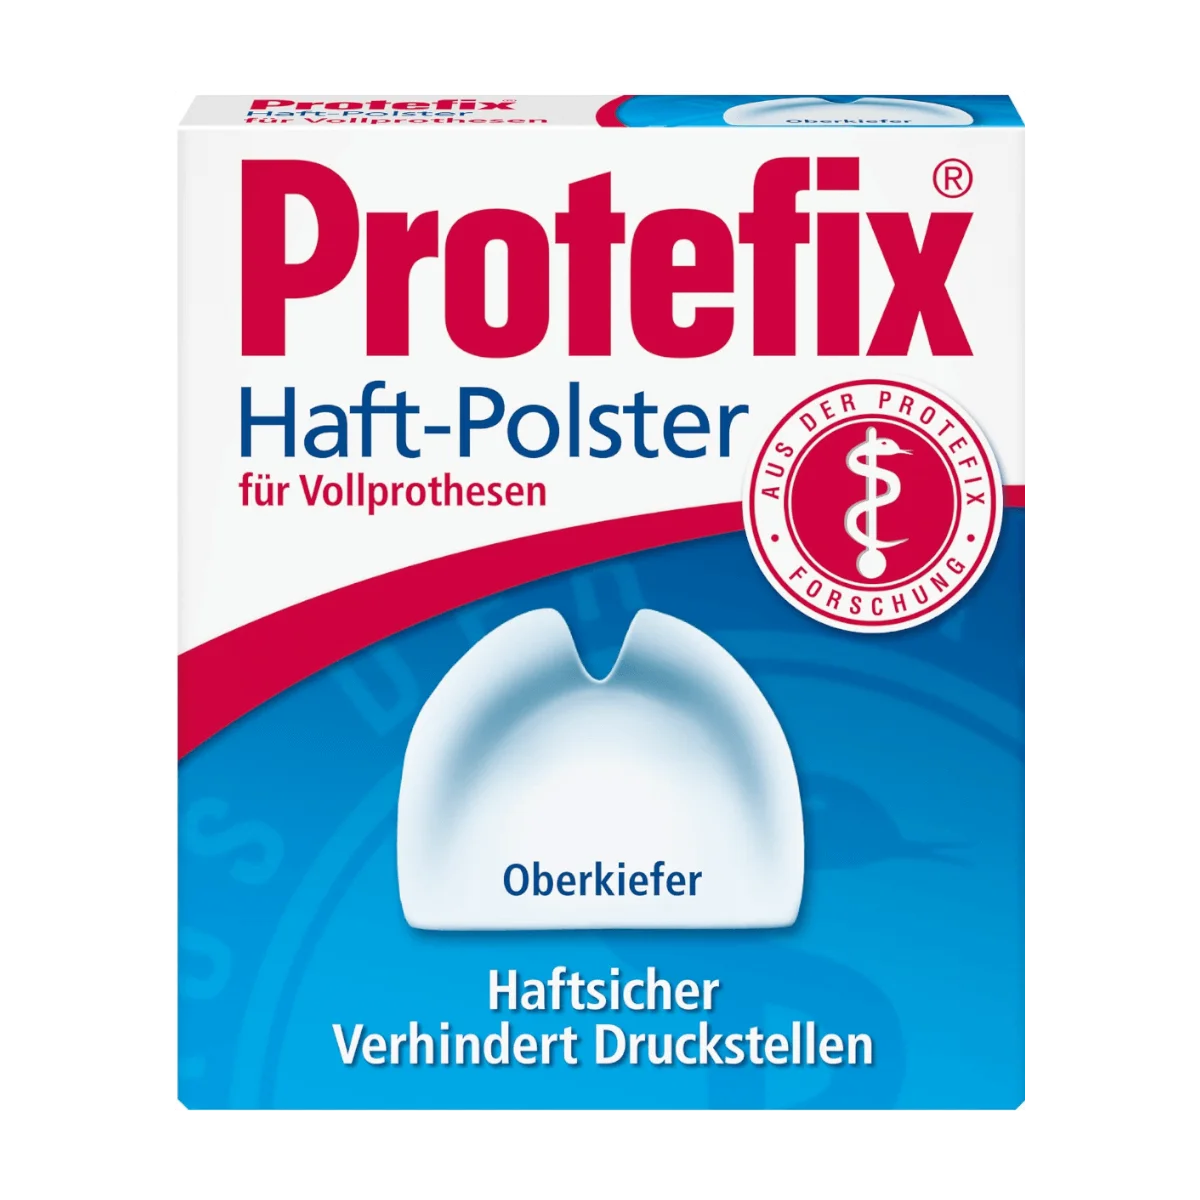 Protefix Haft-Polster für Oberkiefer, 30 Stk